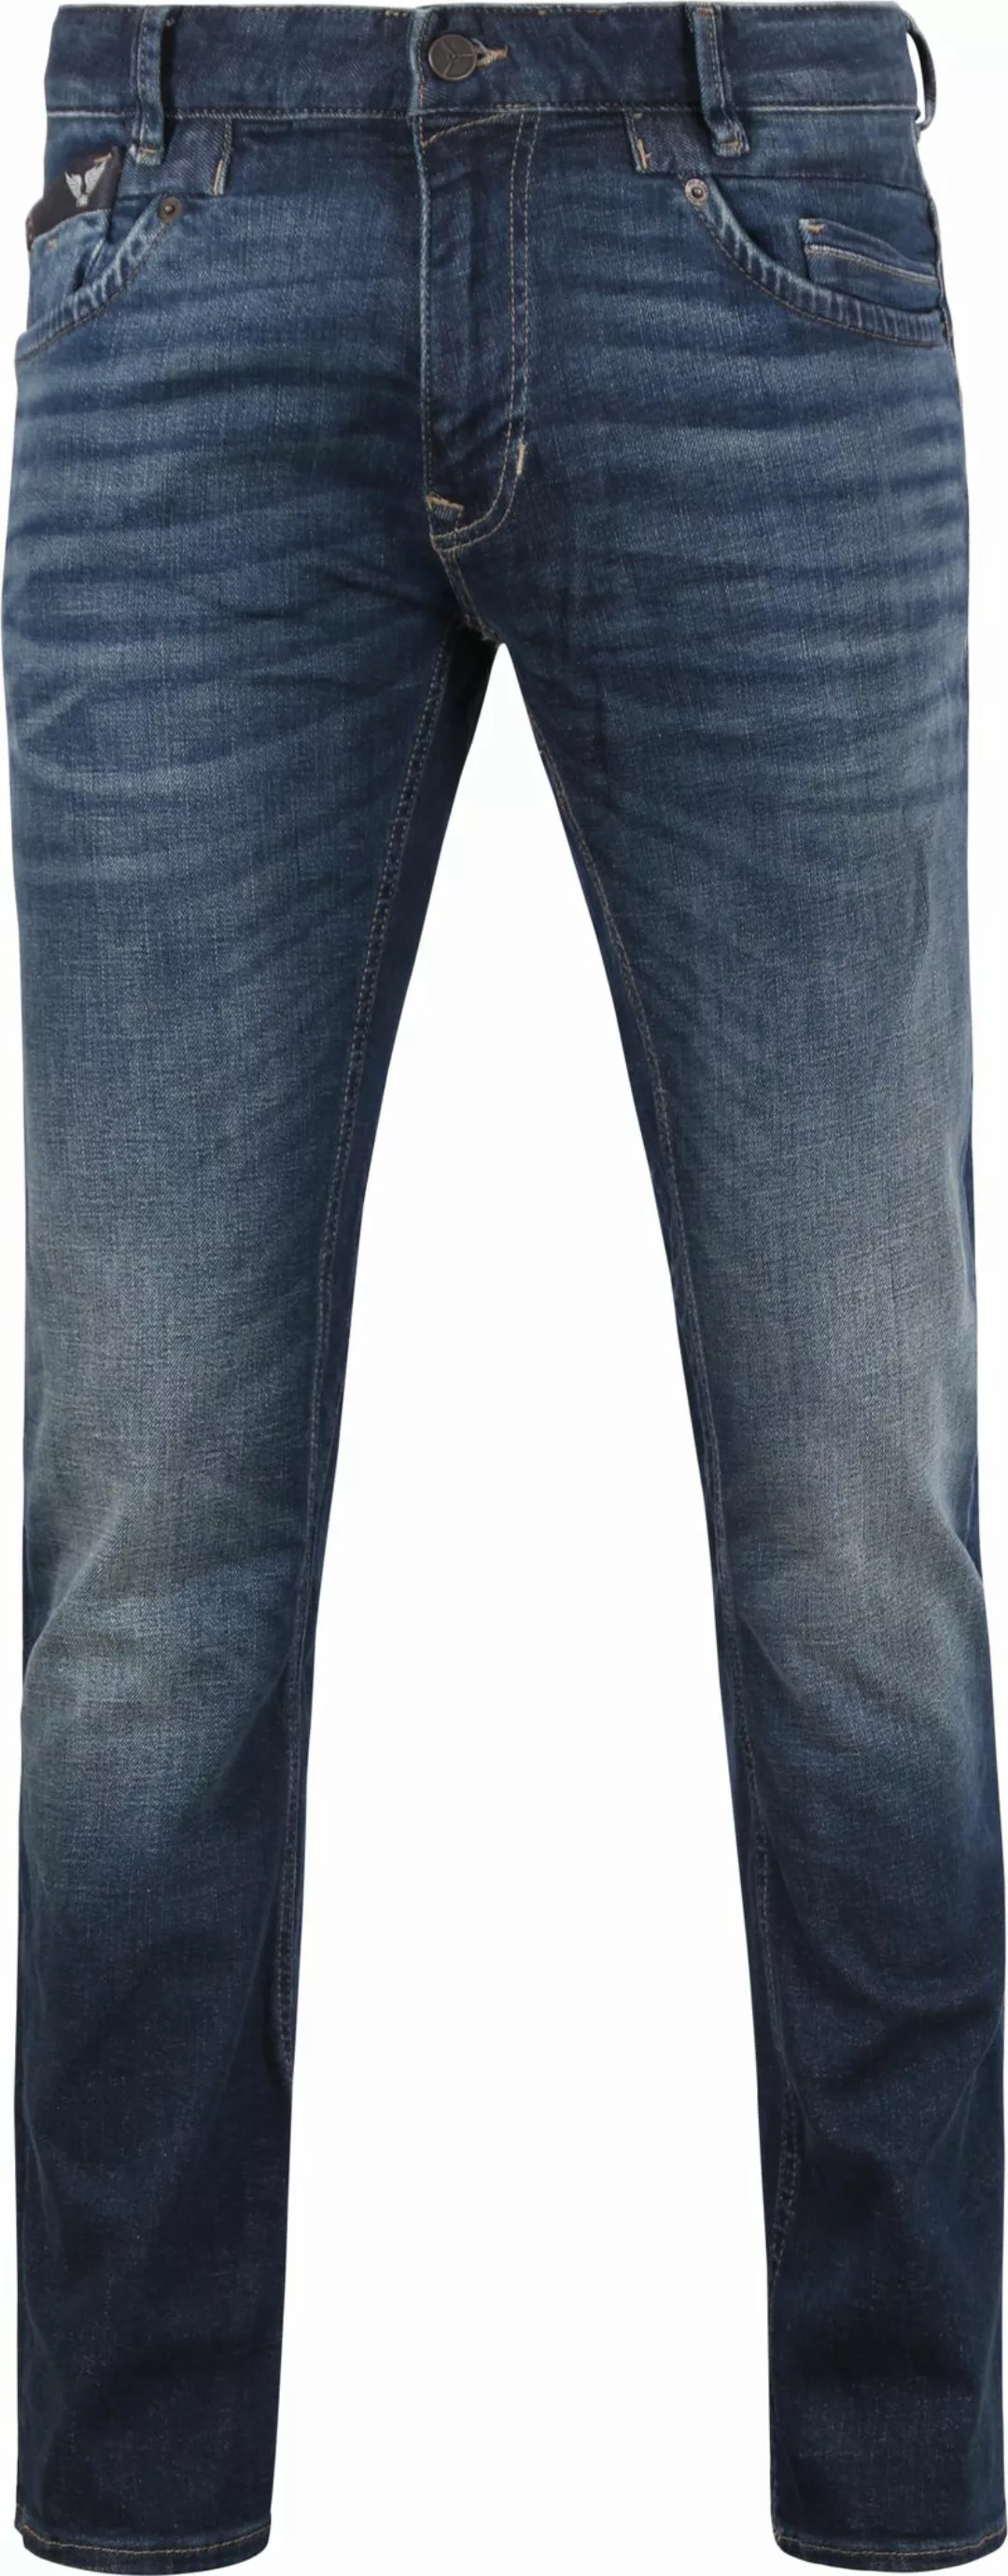 PME Legend Commander 3.0 Jeans Blau DBF - Größe W 34 - L 36 günstig online kaufen